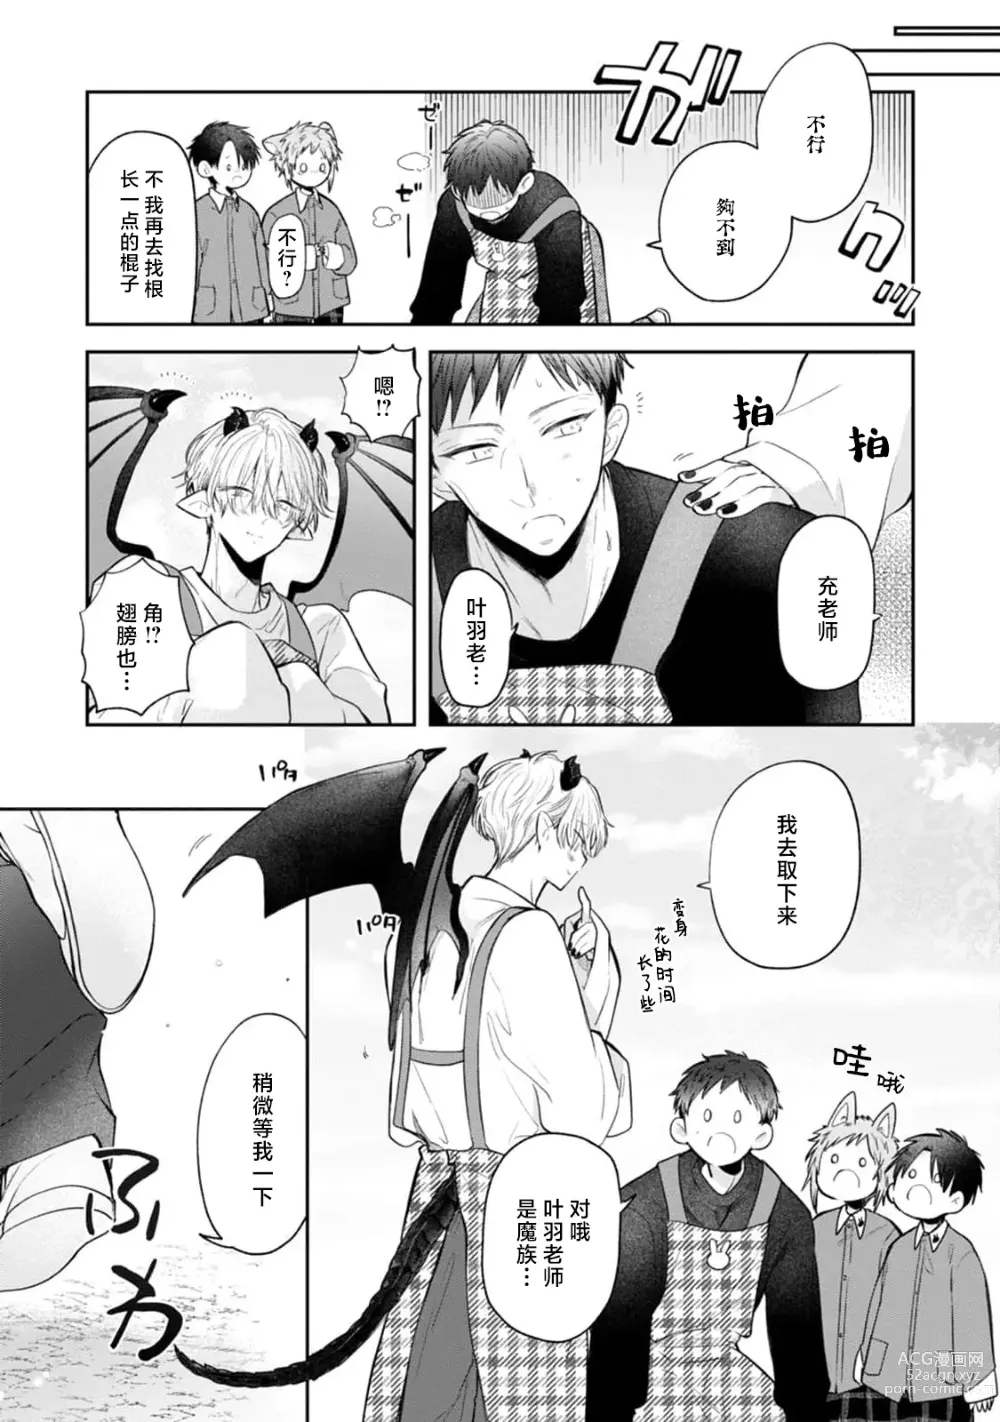 Page 17 of manga 叶羽老师全部是第一次 1-4